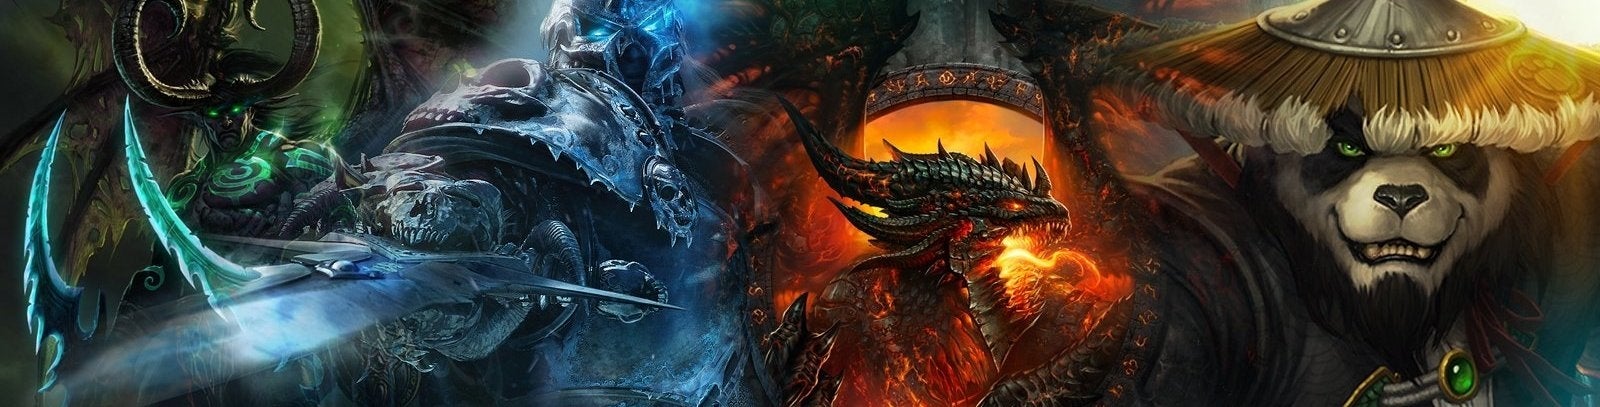 Imagen para Mira en directo el anuncio de la nueva expansión de World of Warcraft